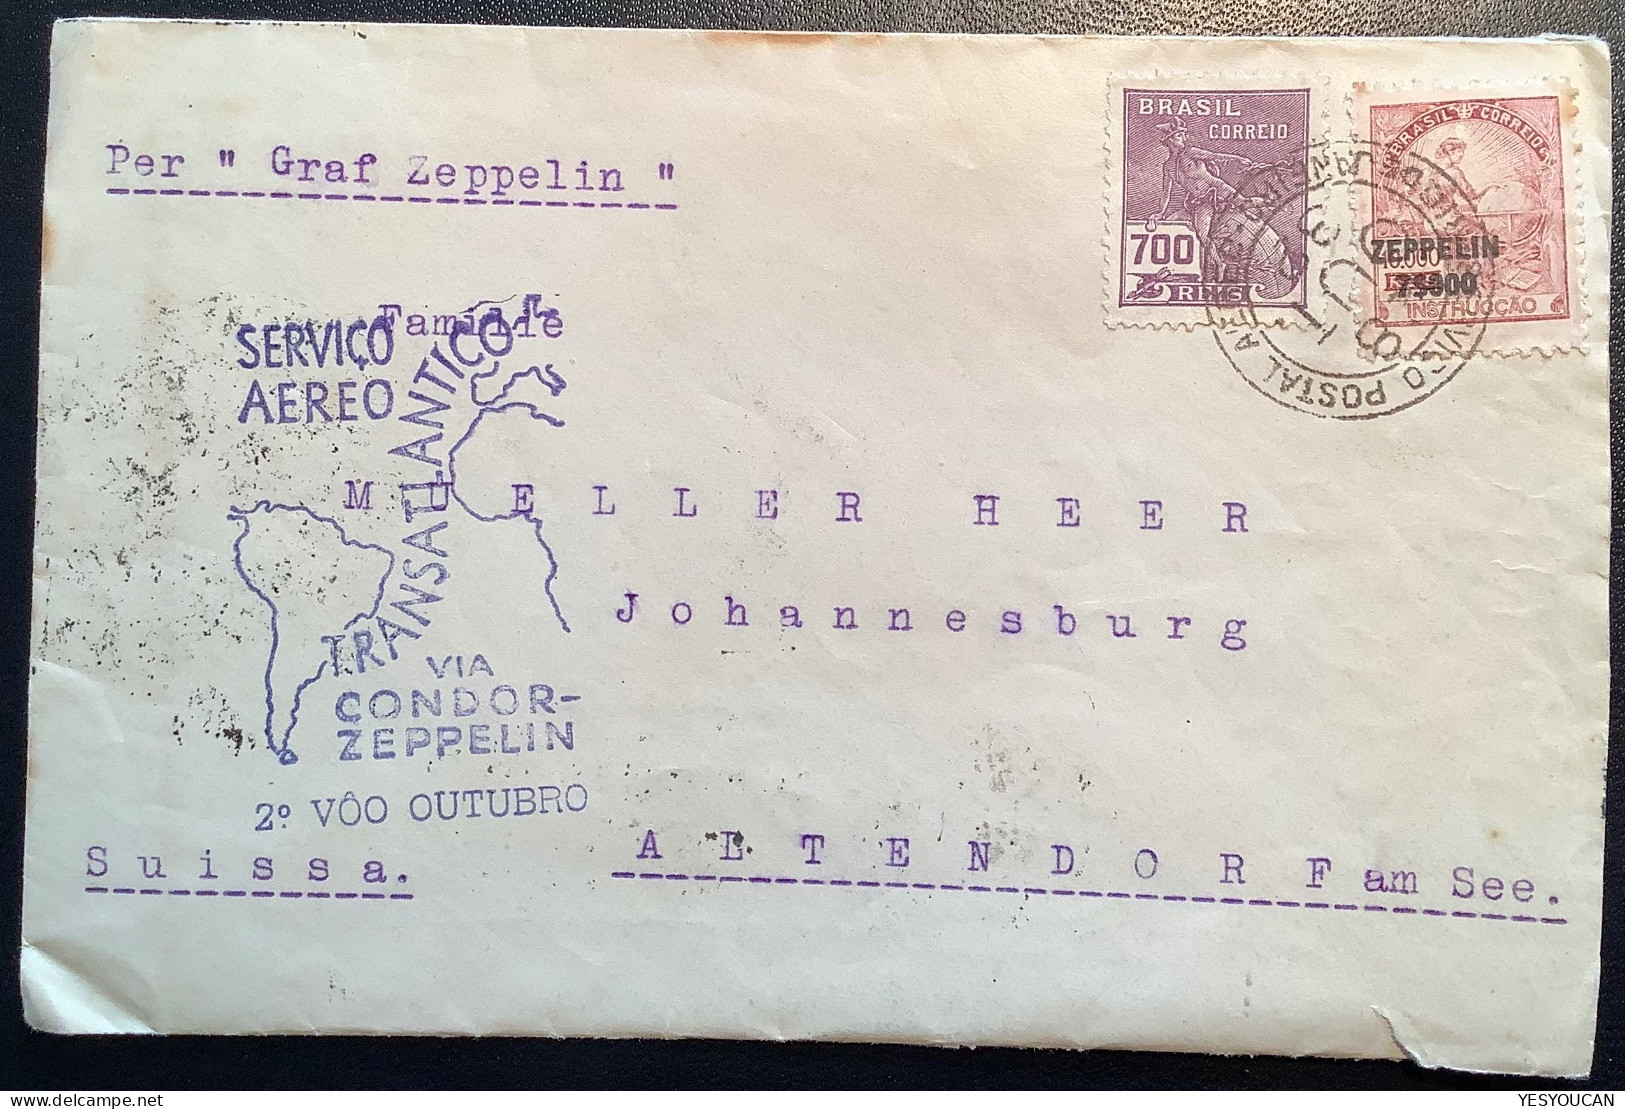 CONDOR-ZEPPELIN1932 Flight„Pedro Elmer Petropolis“cover>Müller-Heer, Altendorf SZ Schweiz (Brazil Luftpost Brief Schweiz - Luchtpost